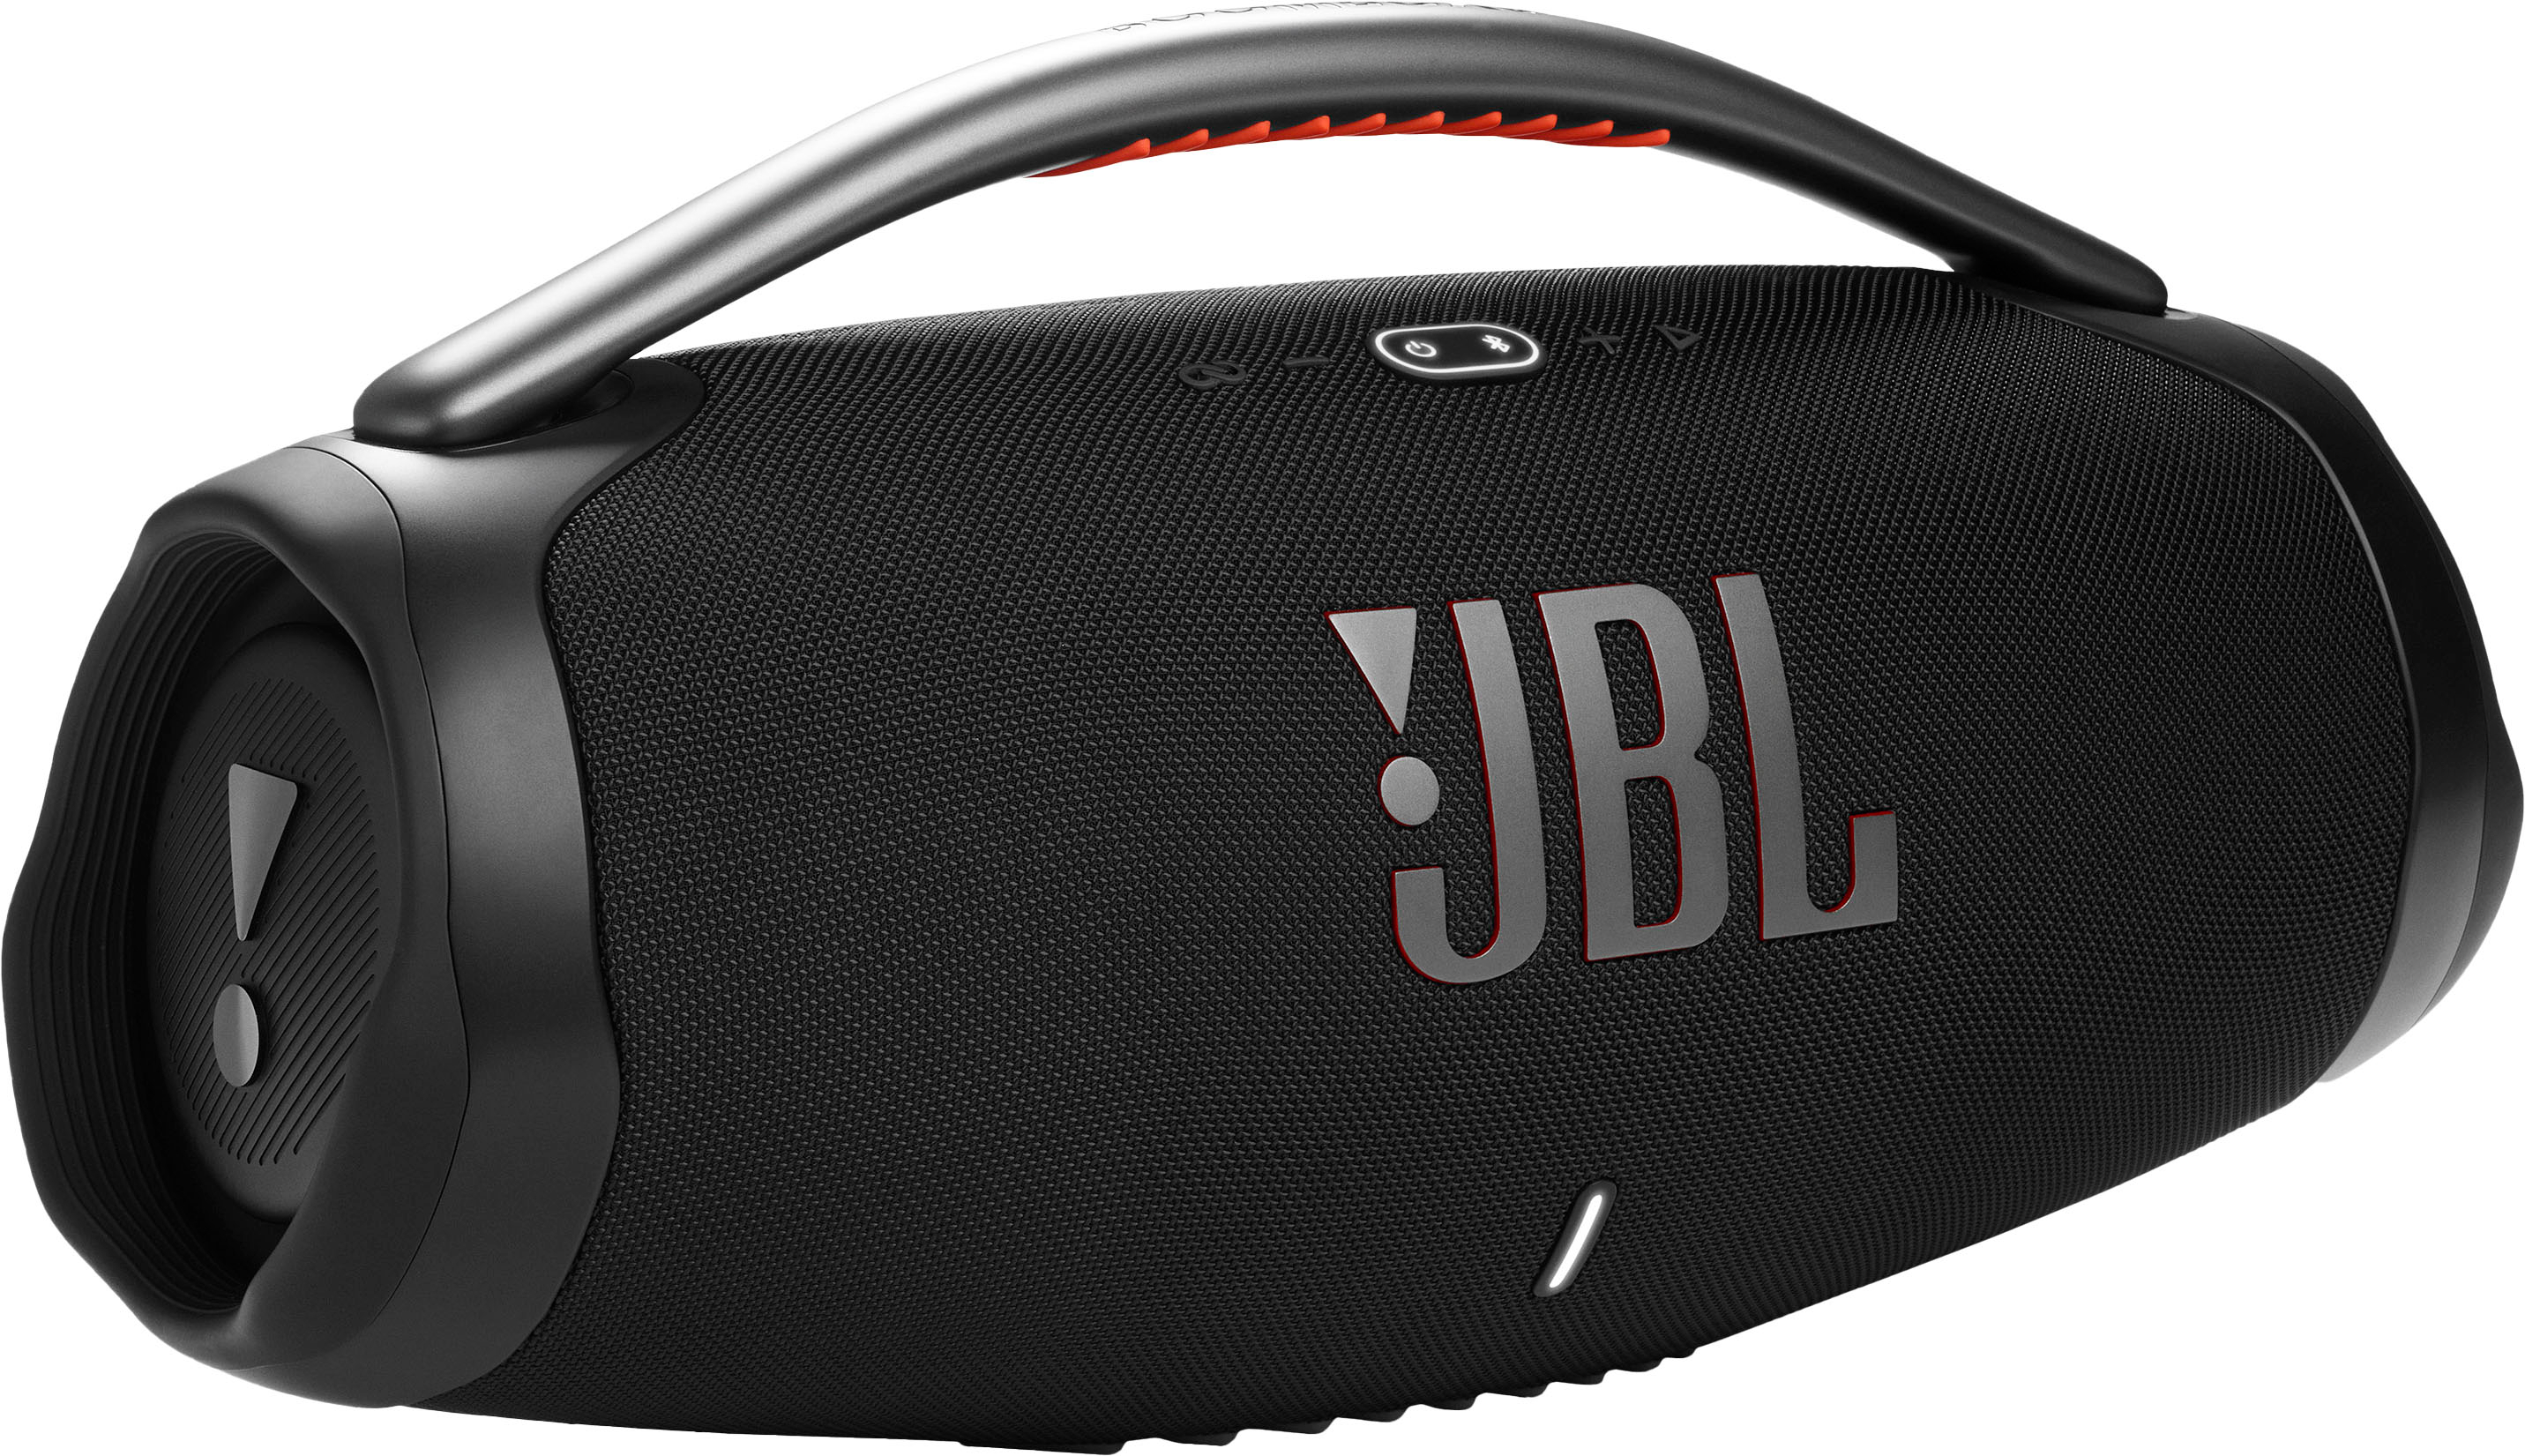 krone antydning Lodge JBL Boombox3 Portable Bluetooth Speaker Black JBLBOOMBOX3BLKAM - Best Buy